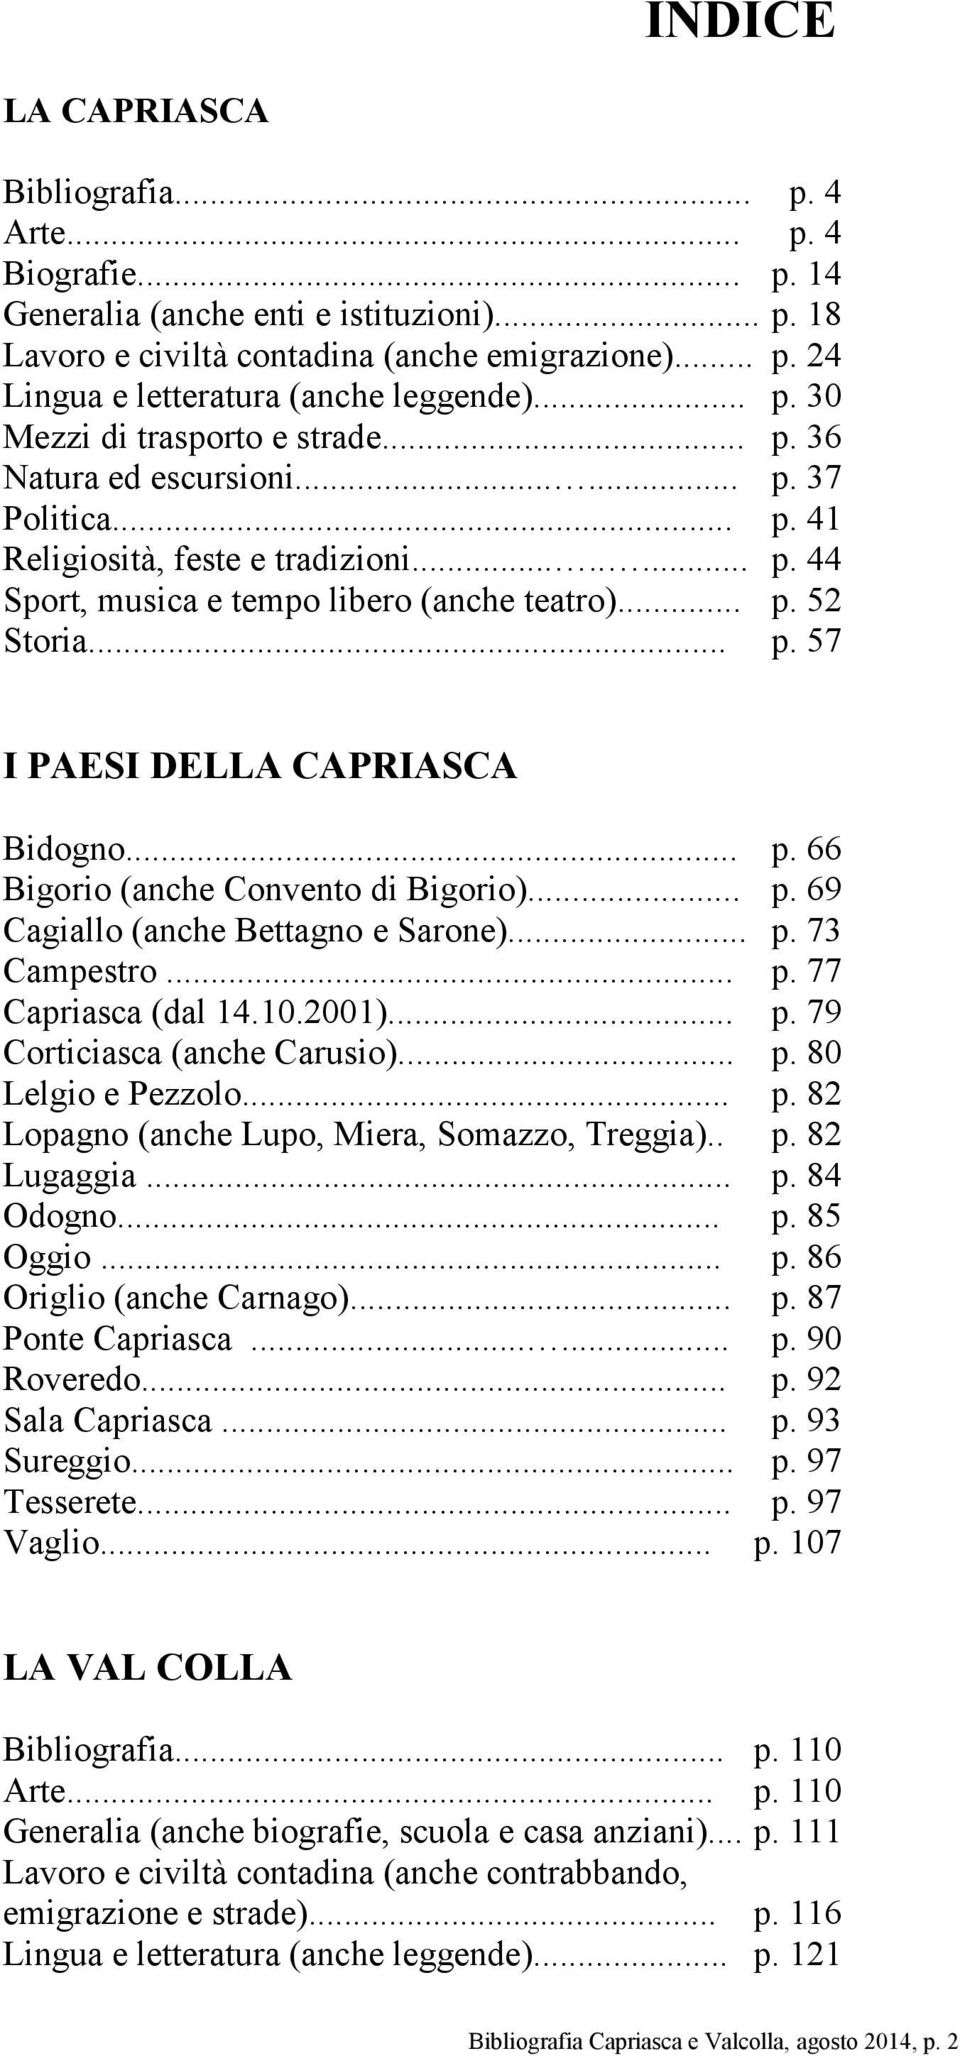 .. p. 57 I PAESI DELLA CAPRIASCA Bidogno... p. 66 Bigorio (anche Convento di Bigorio)... p. 69 Cagiallo (anche Bettagno e Sarone)... p. 73 Campestro... p. 77 Capriasca (dal 14.10.2001)... p. 79 Corticiasca (anche Carusio).